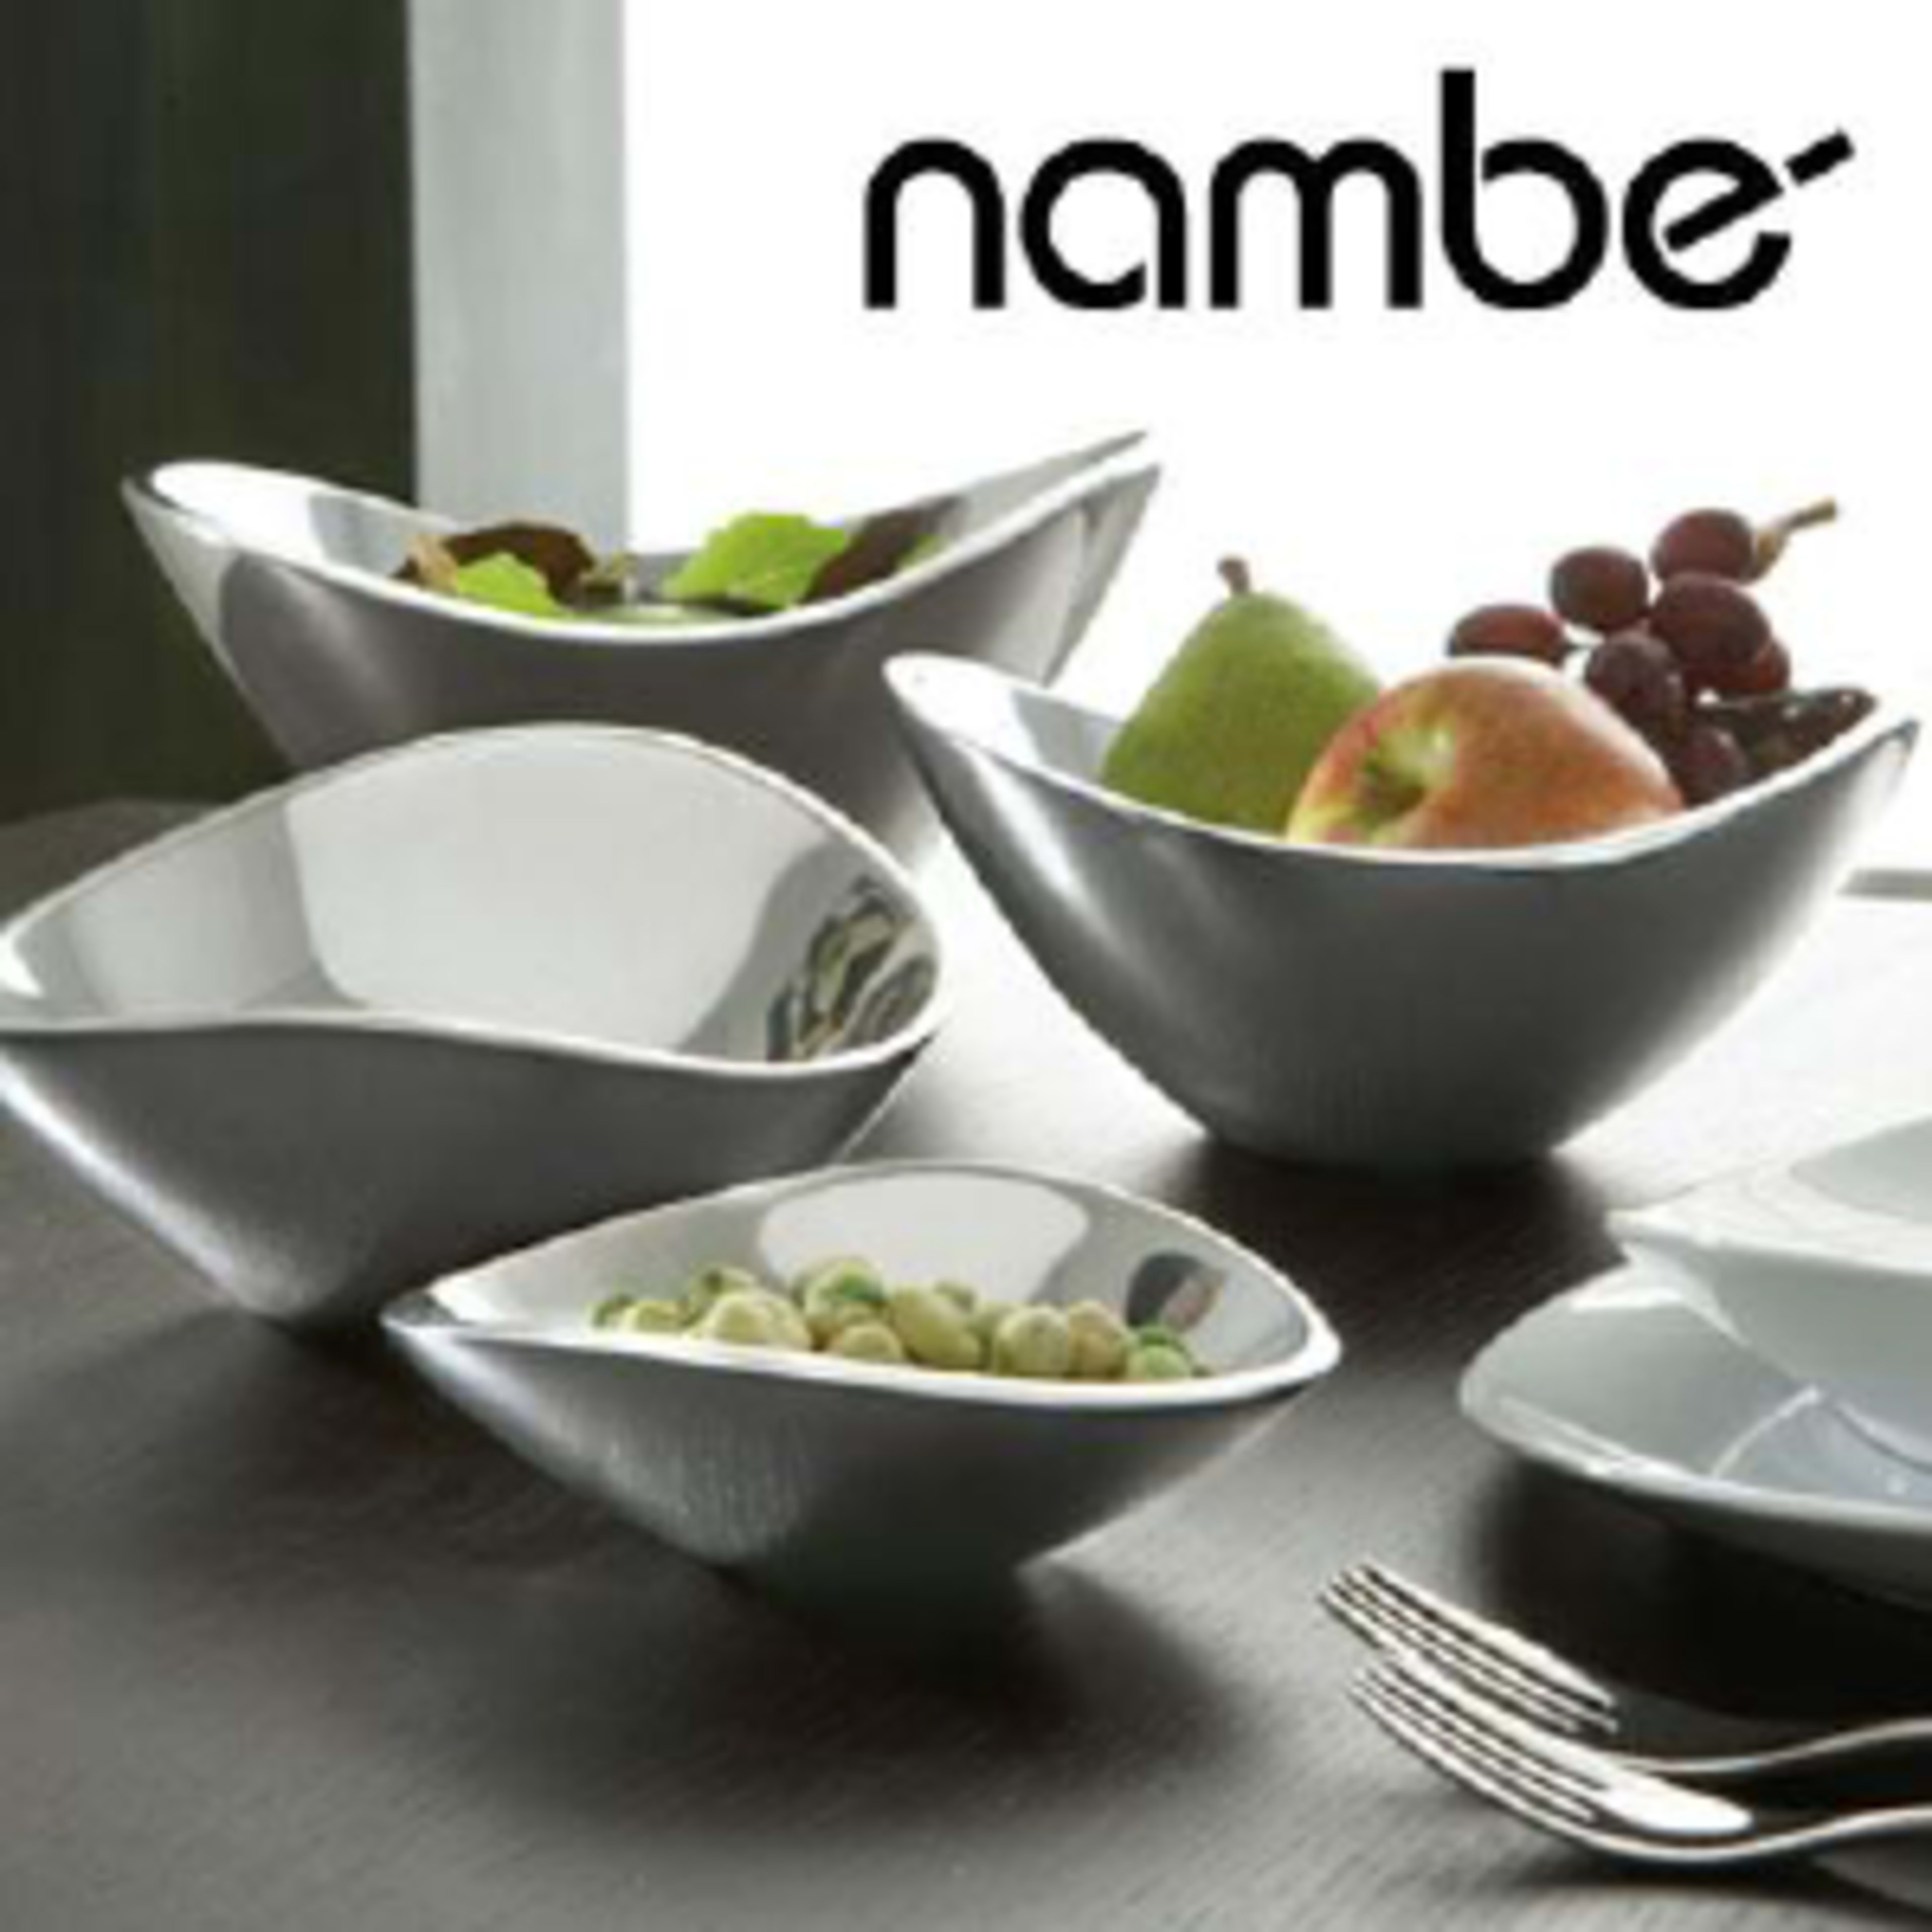 NambeCode